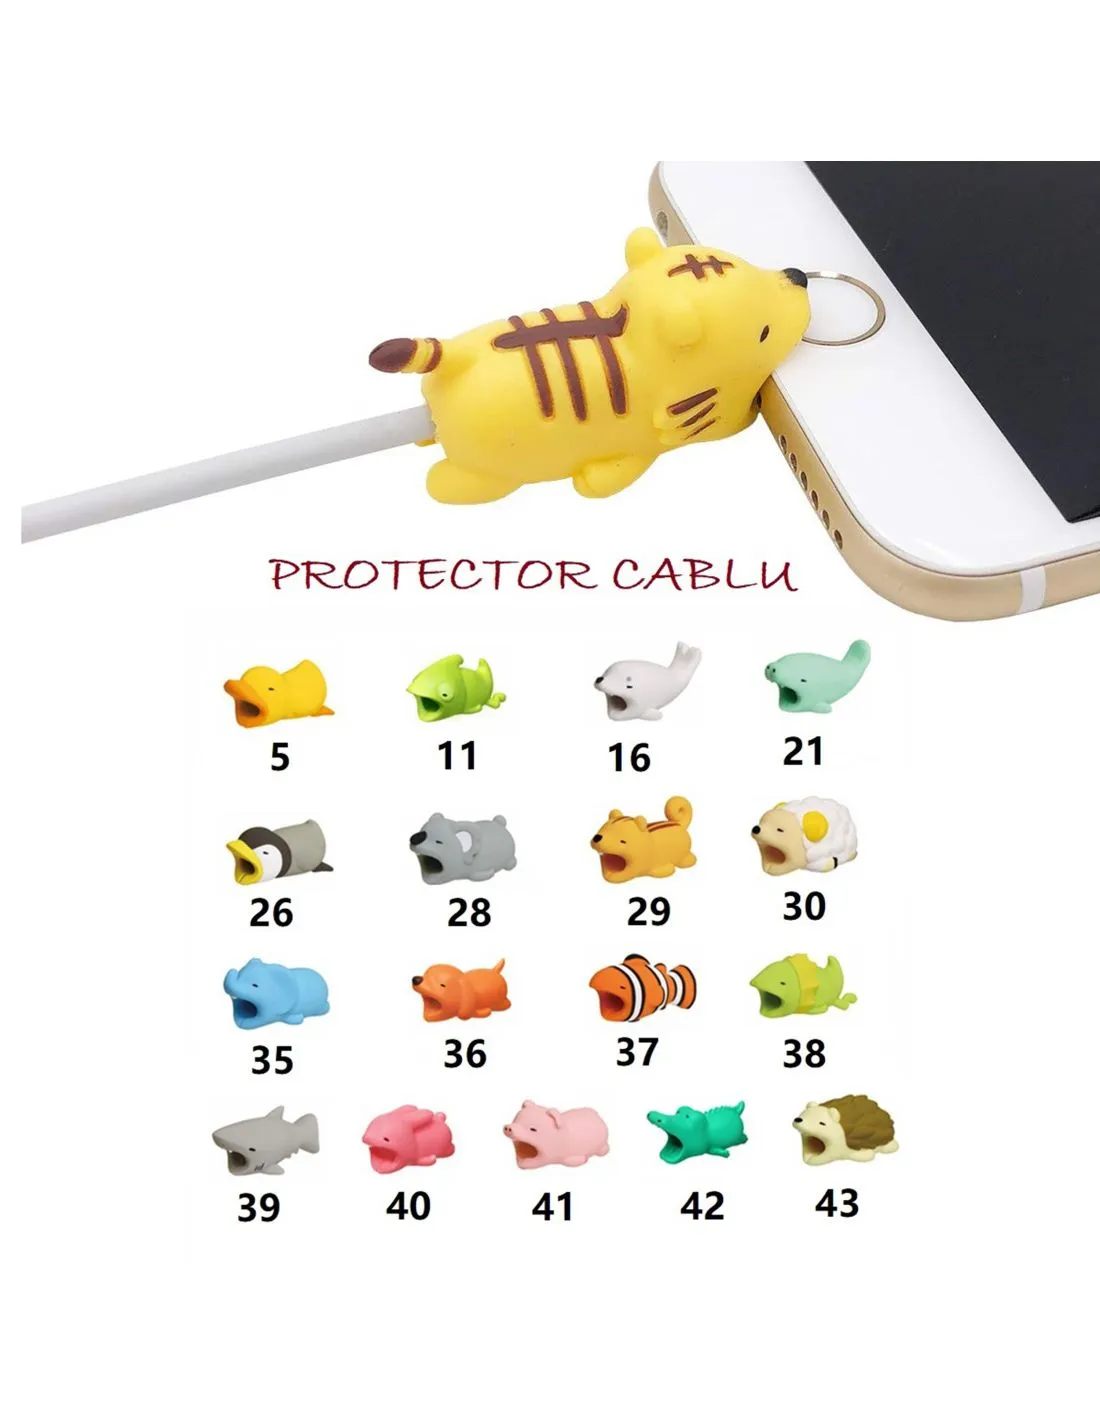 Protectie cablu animal bites